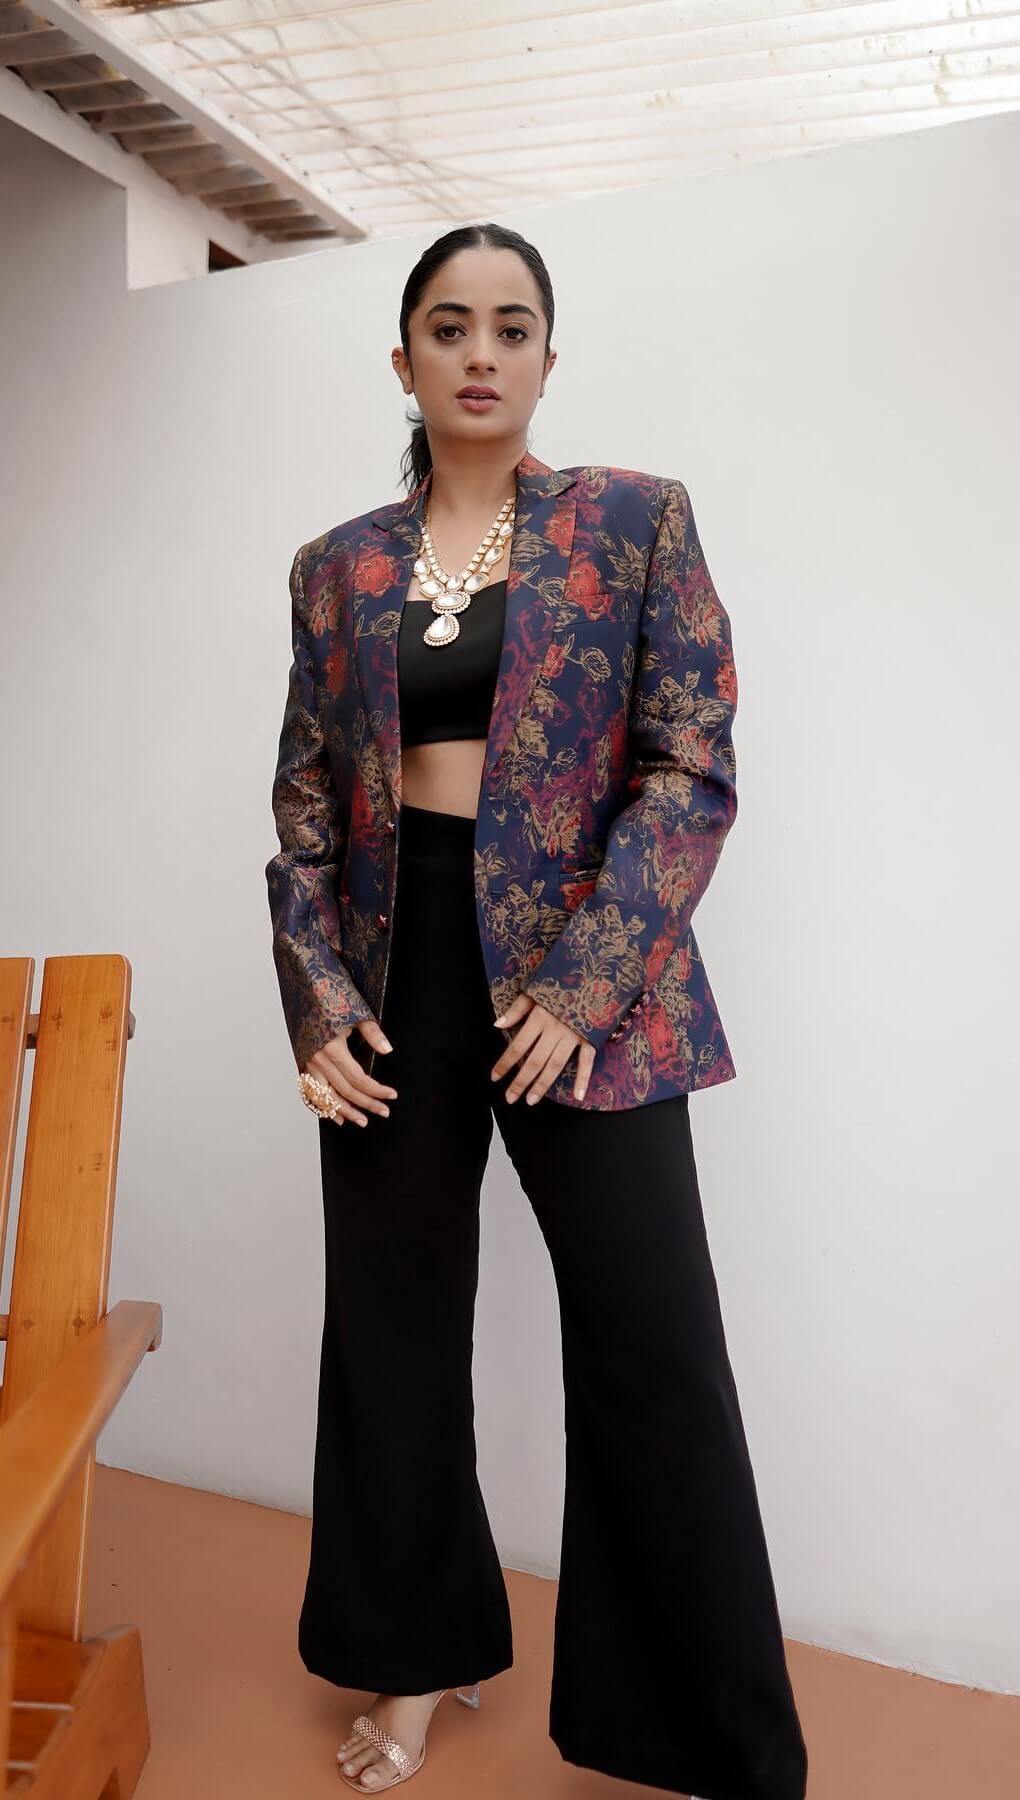 Namitha Pramod Chic & Sleek Look In Blue Floral Printed Blazer With Black Crop Top & Pants